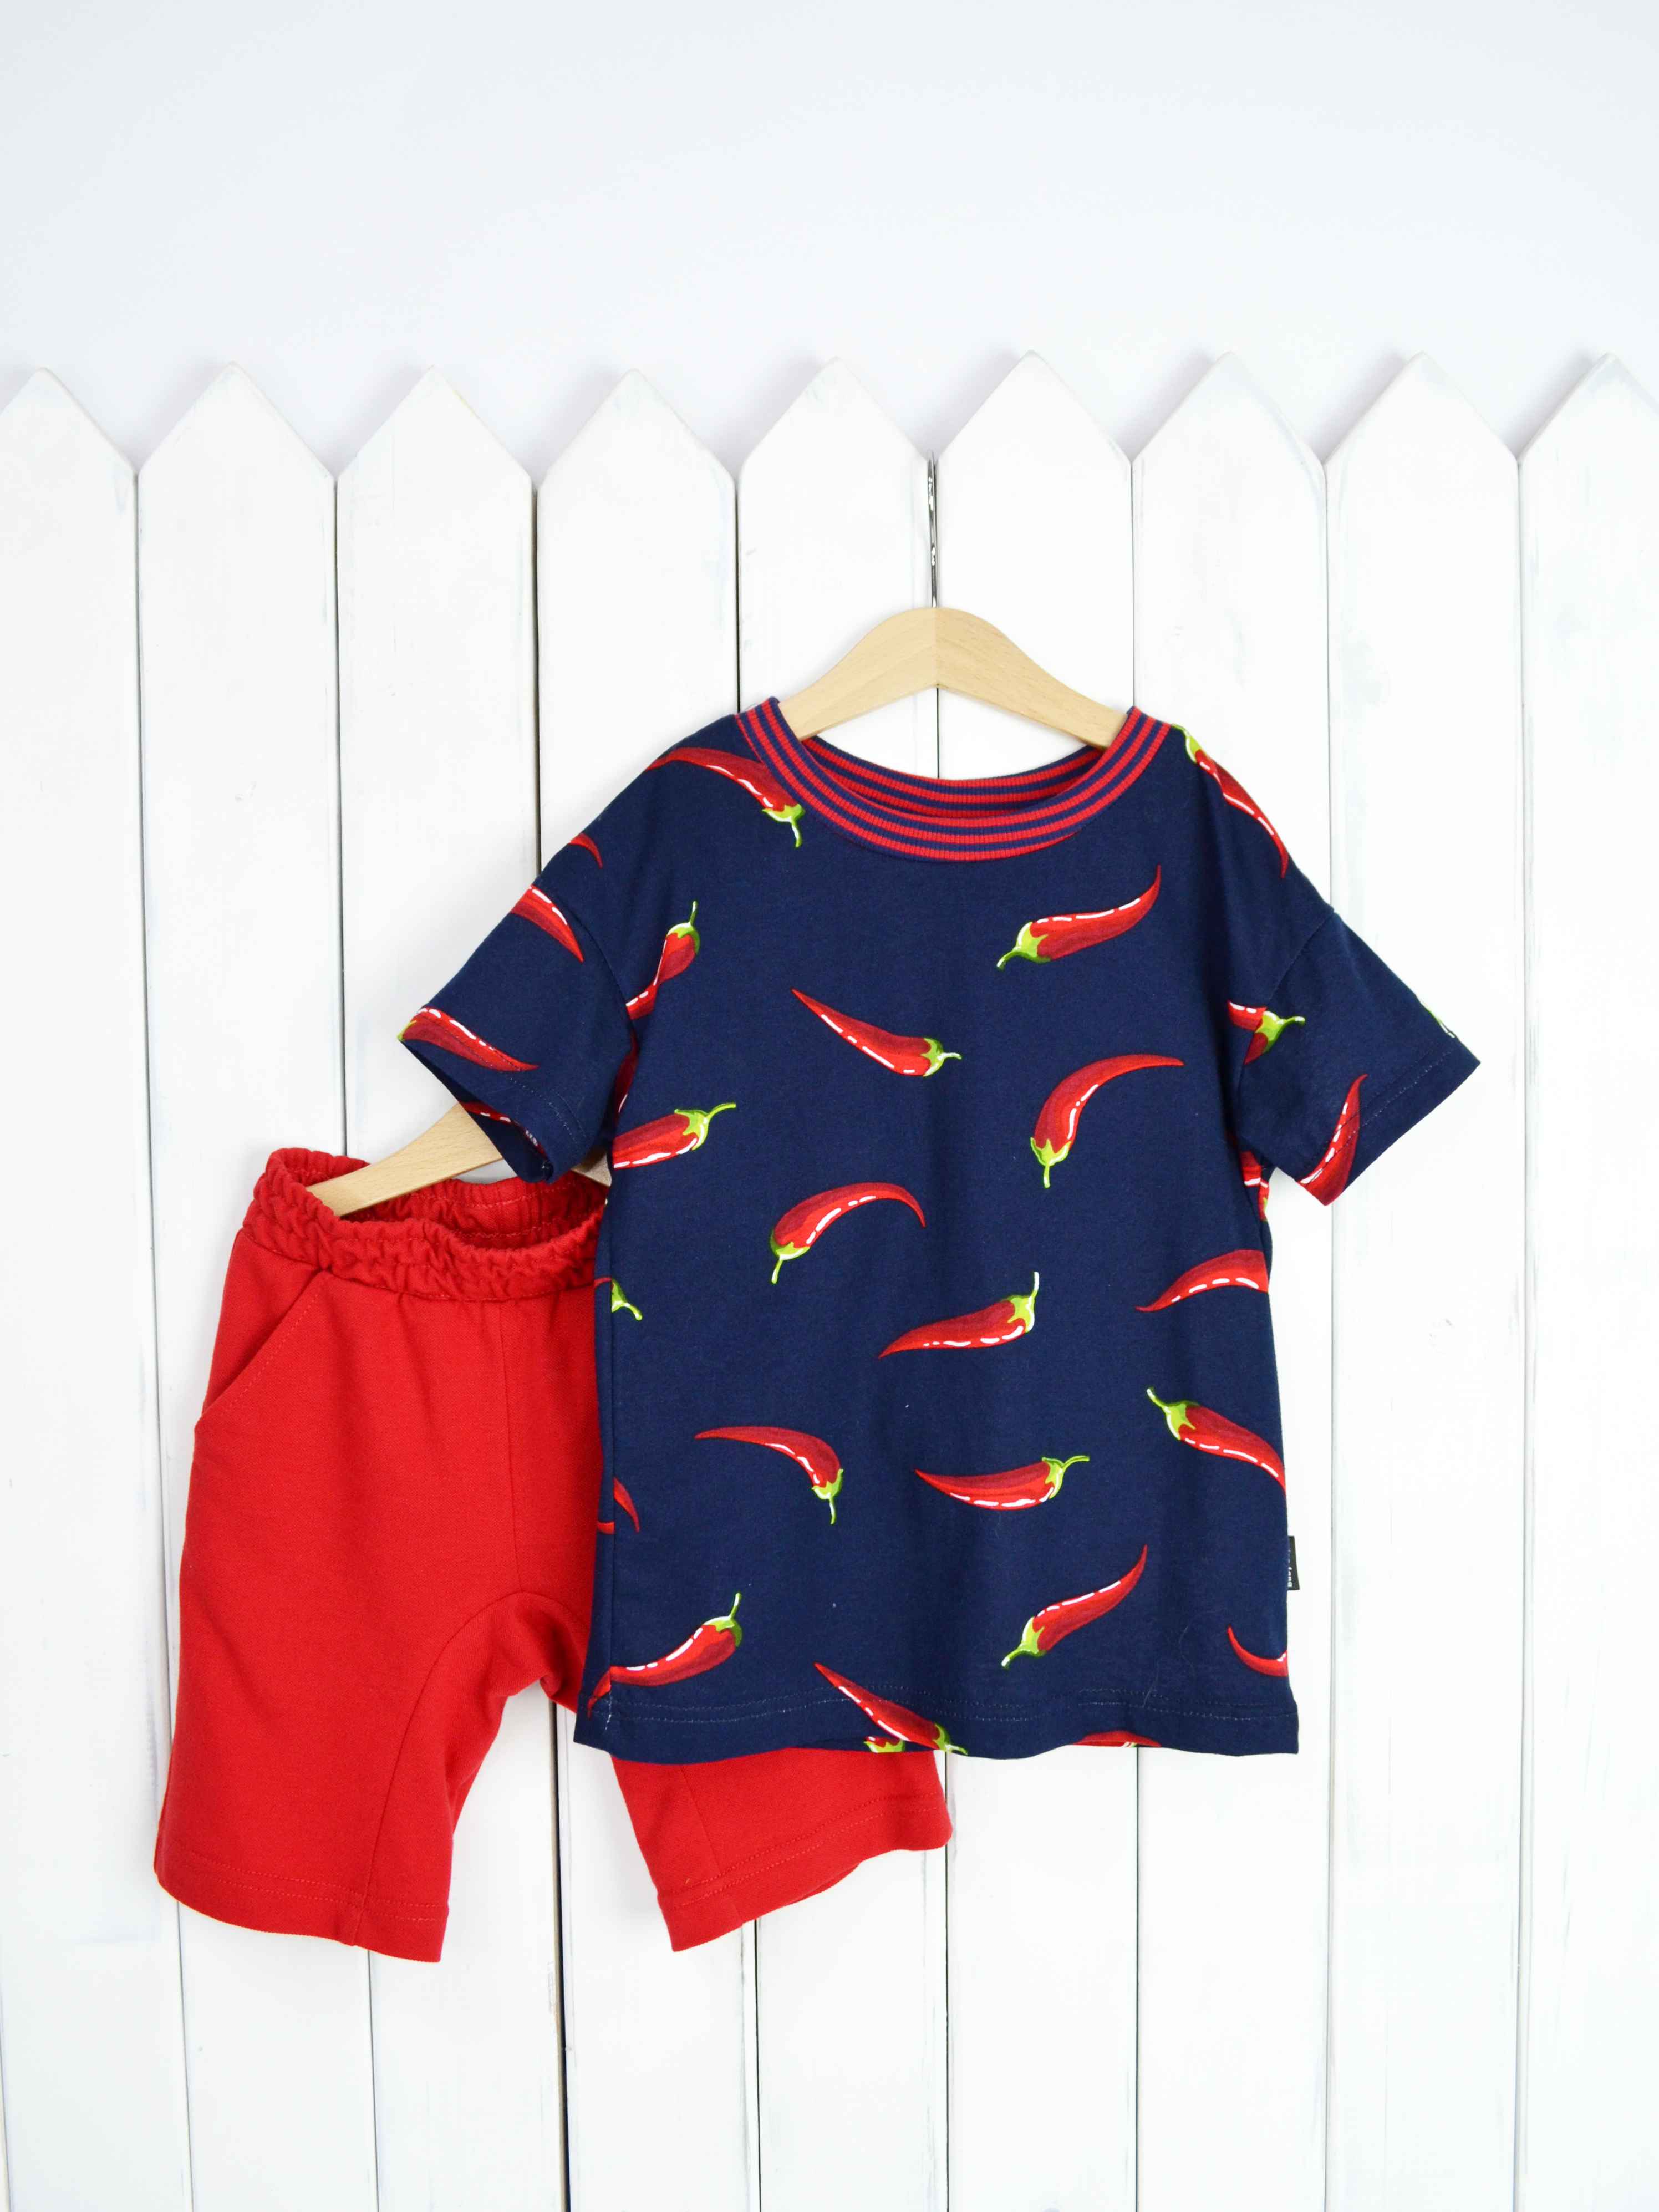 КД354/1-К Комплект детский р.92 Крутые перцы футболка+шорты/красное пике Бэби Бум